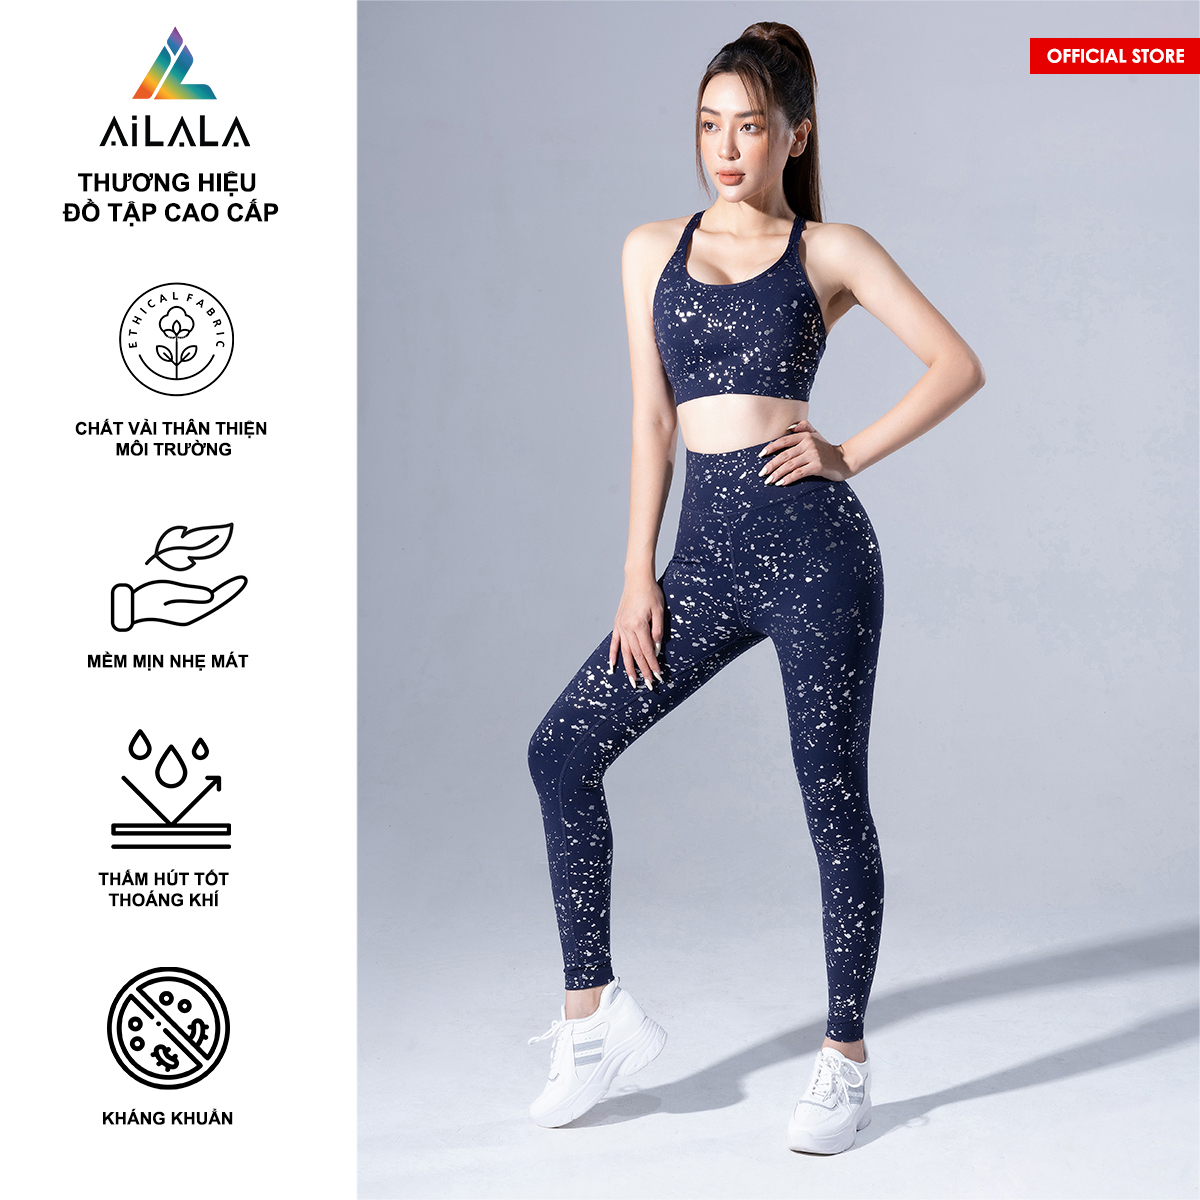 Bộ quần áo thể thao nữ AiLALA LUX39, Đồ tập Yoga Gym Pilates, chất vải Hi-tech cao cấp